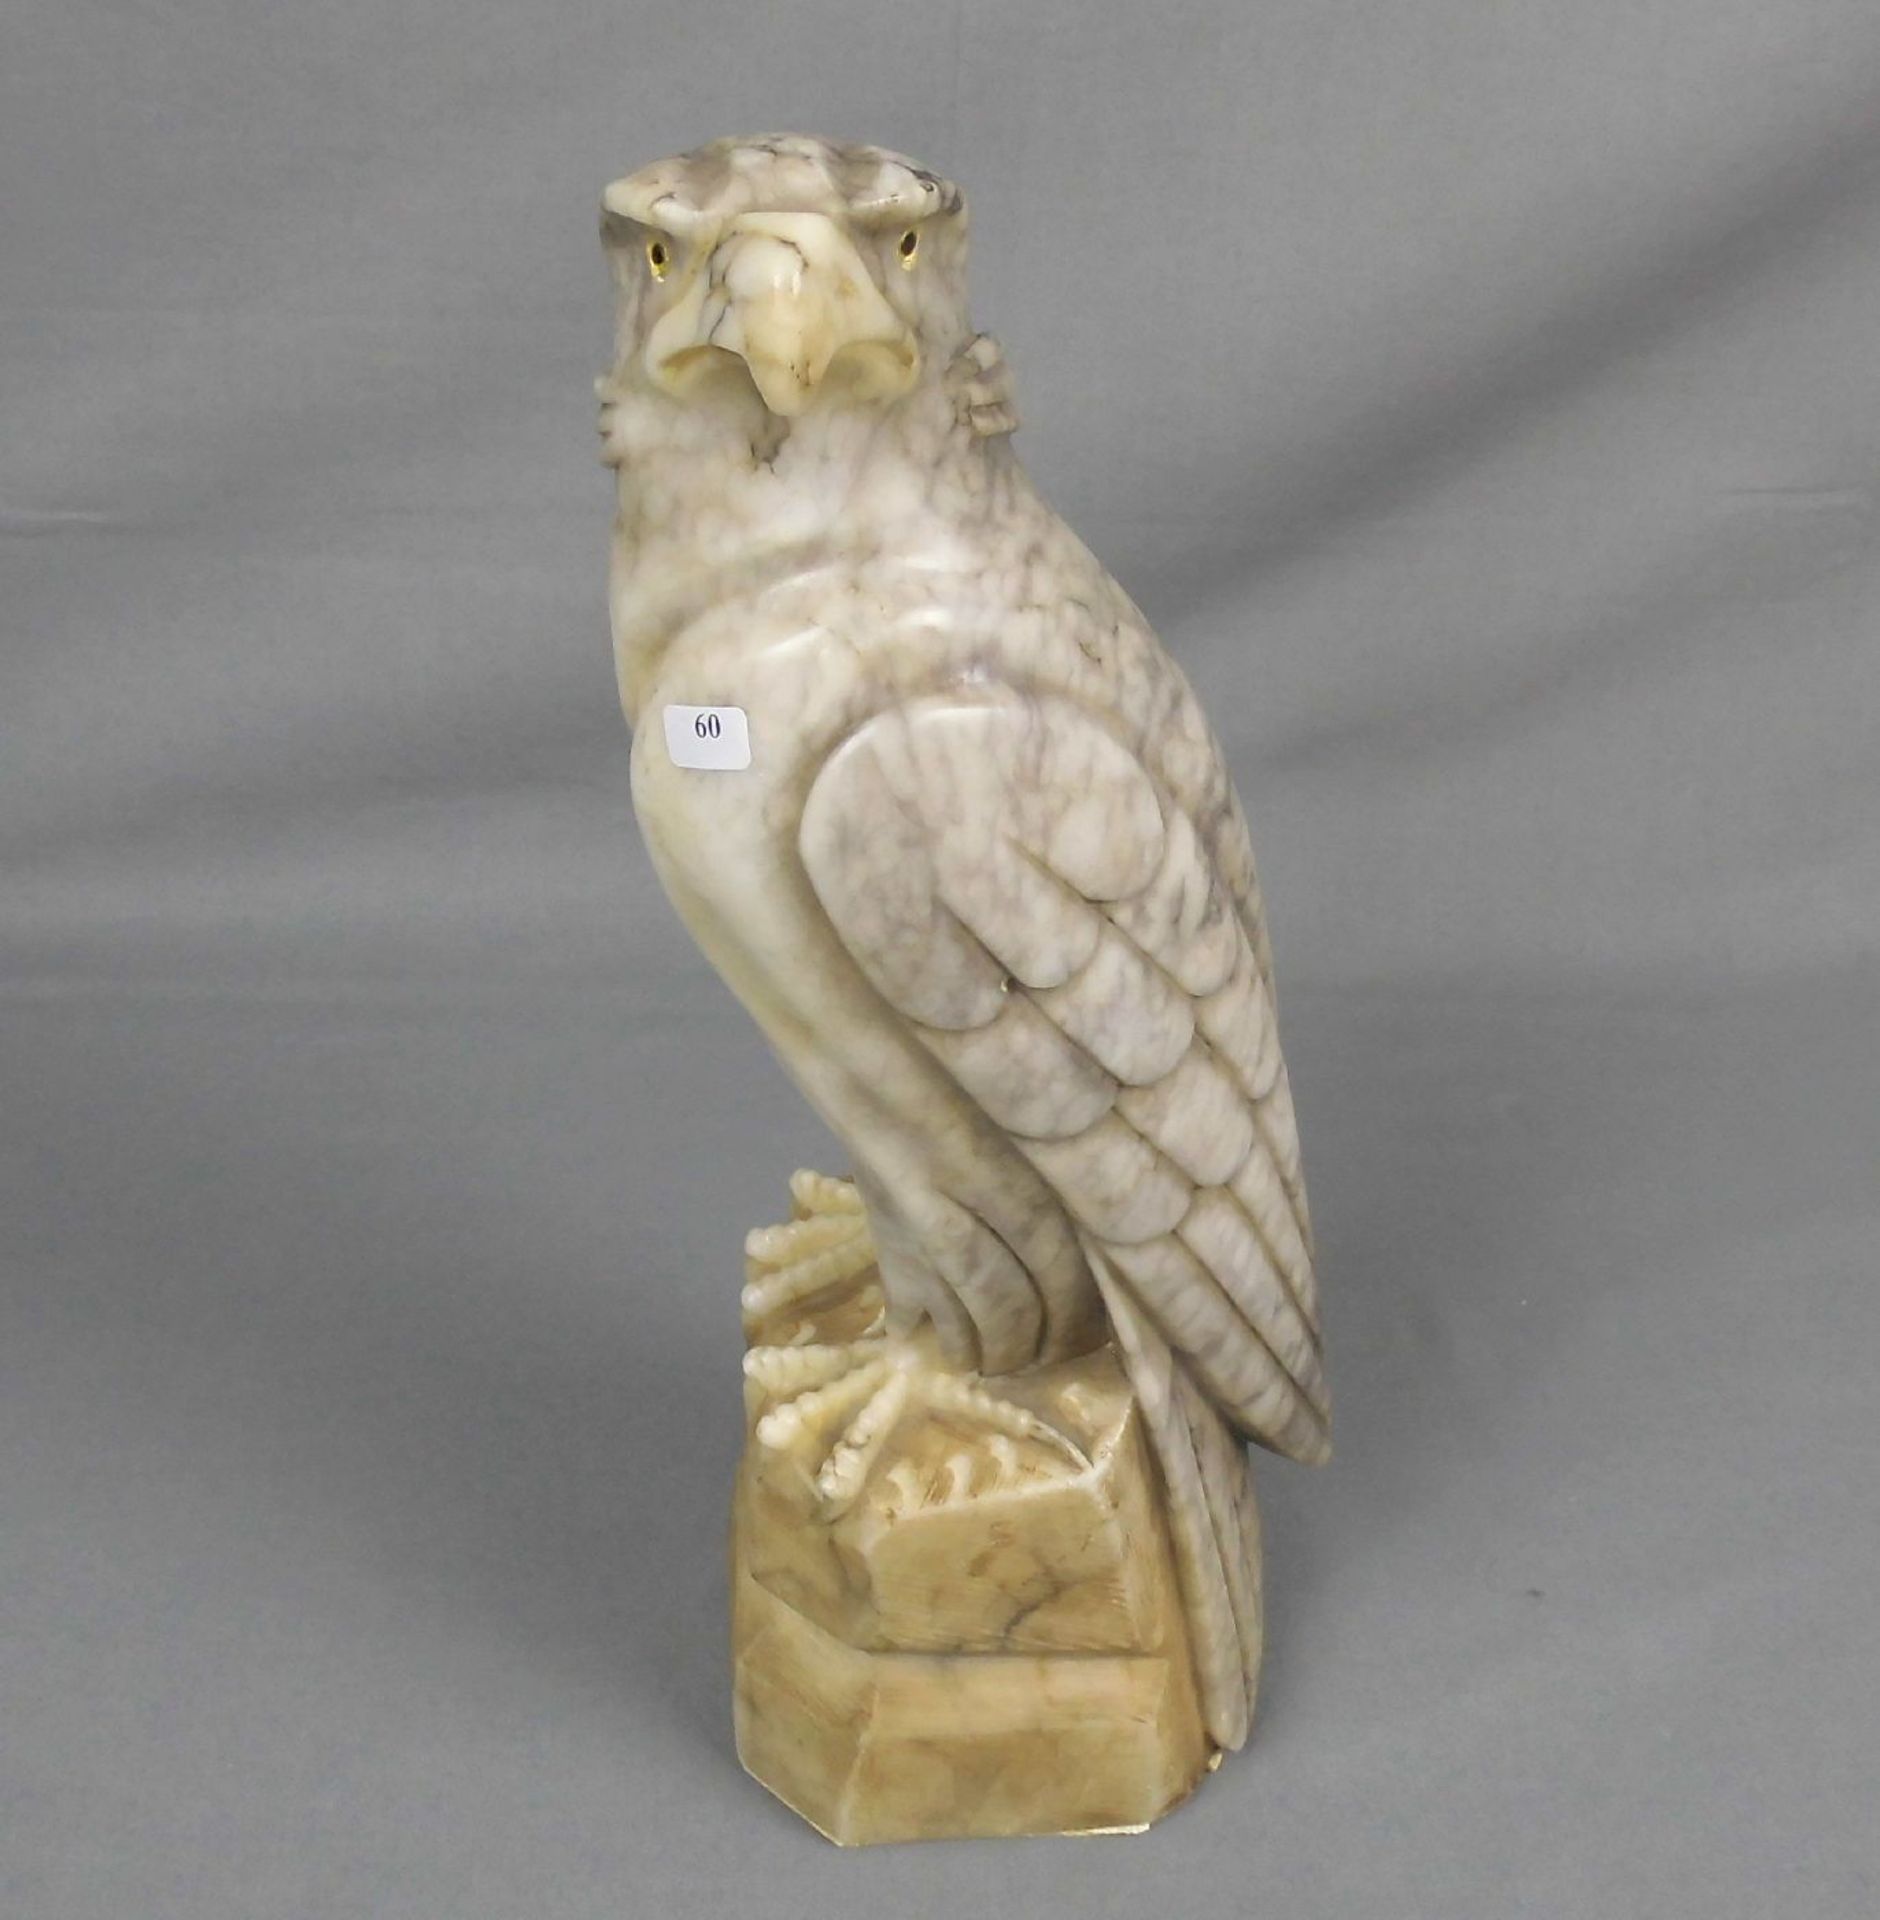 ANONYUMUS (dt. Bildhauer des 19./20. Jh.), Skulptur / sculpture: "Adler", Marmor; naturalistisch